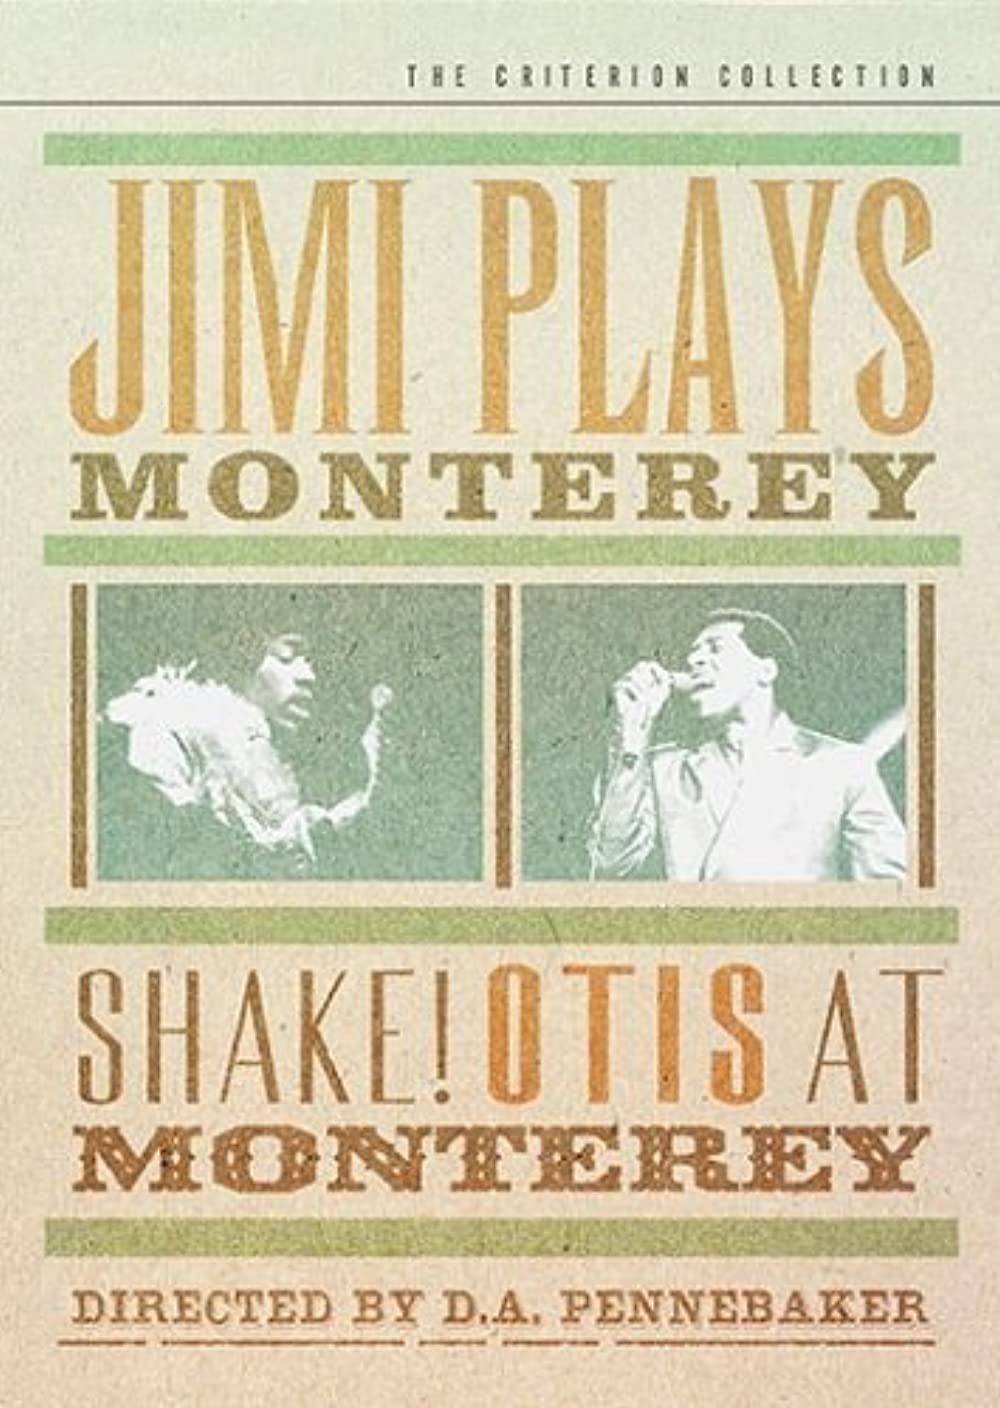 Shake!: Otis at Monterey (Short 1987)